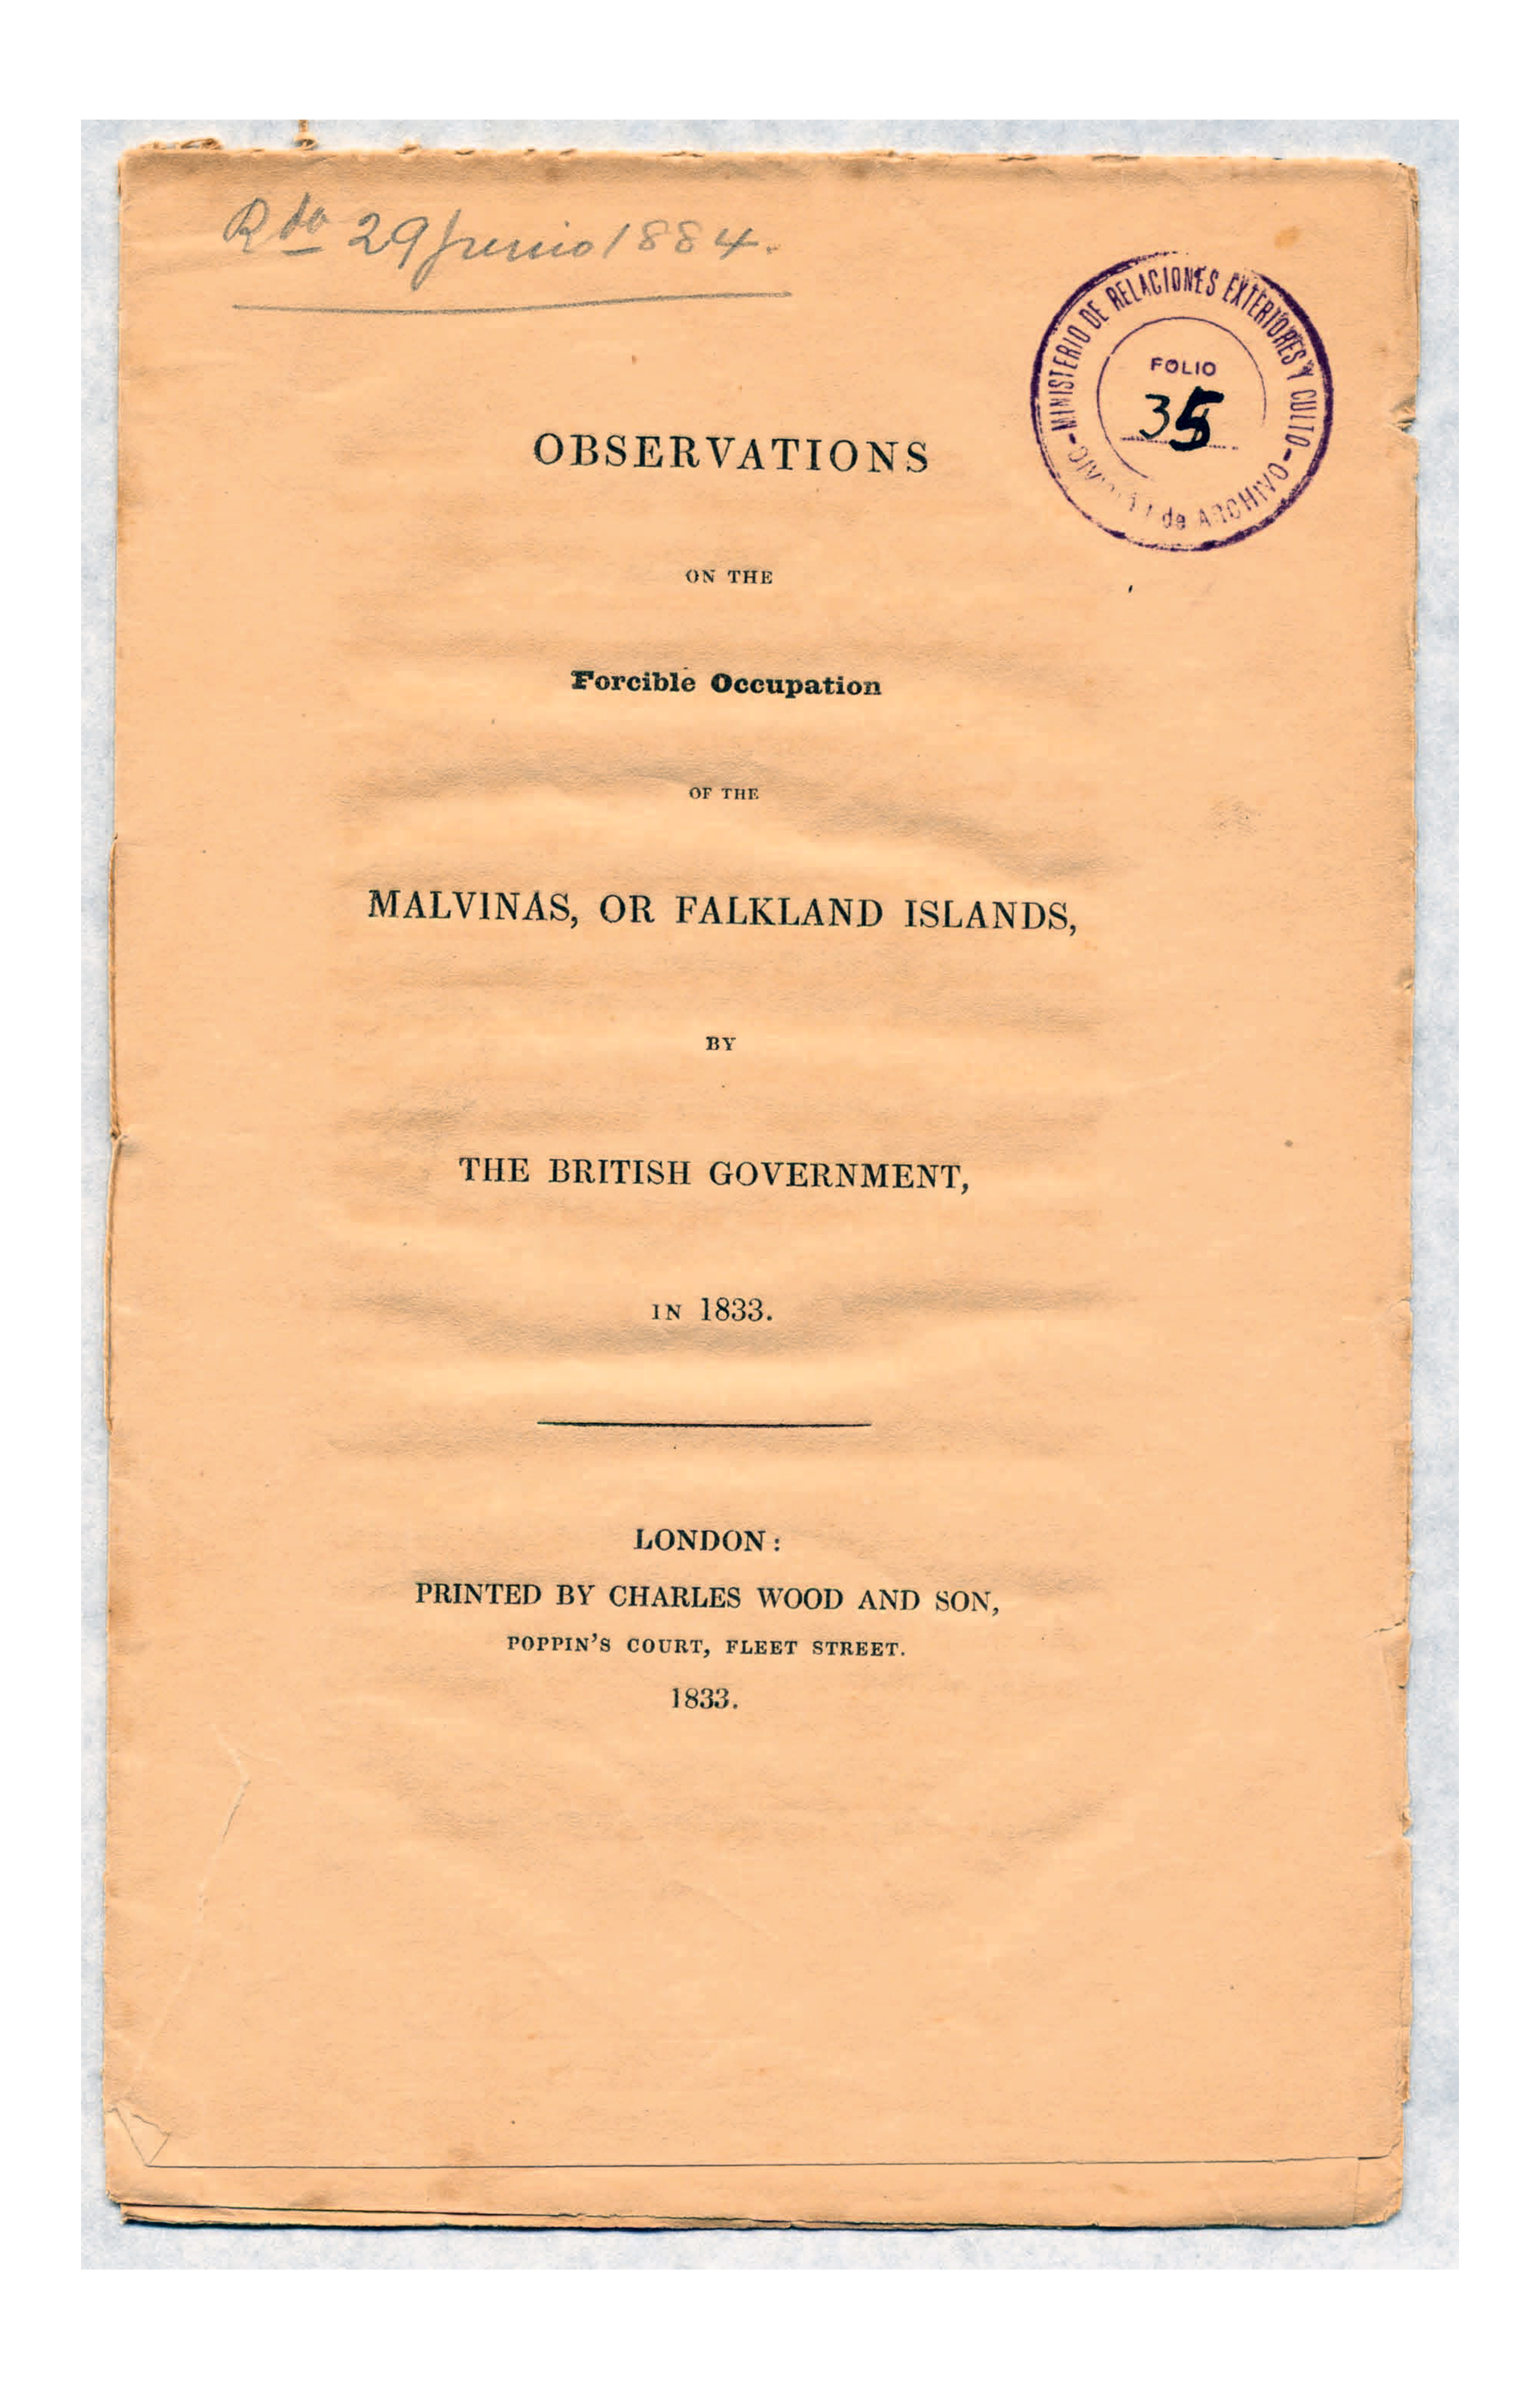 Argentina empezó a reclamar por sus derechos sobre Malvinas el 14 de enero de 1833, apenas once días después de que se produjera la usurpación británica.